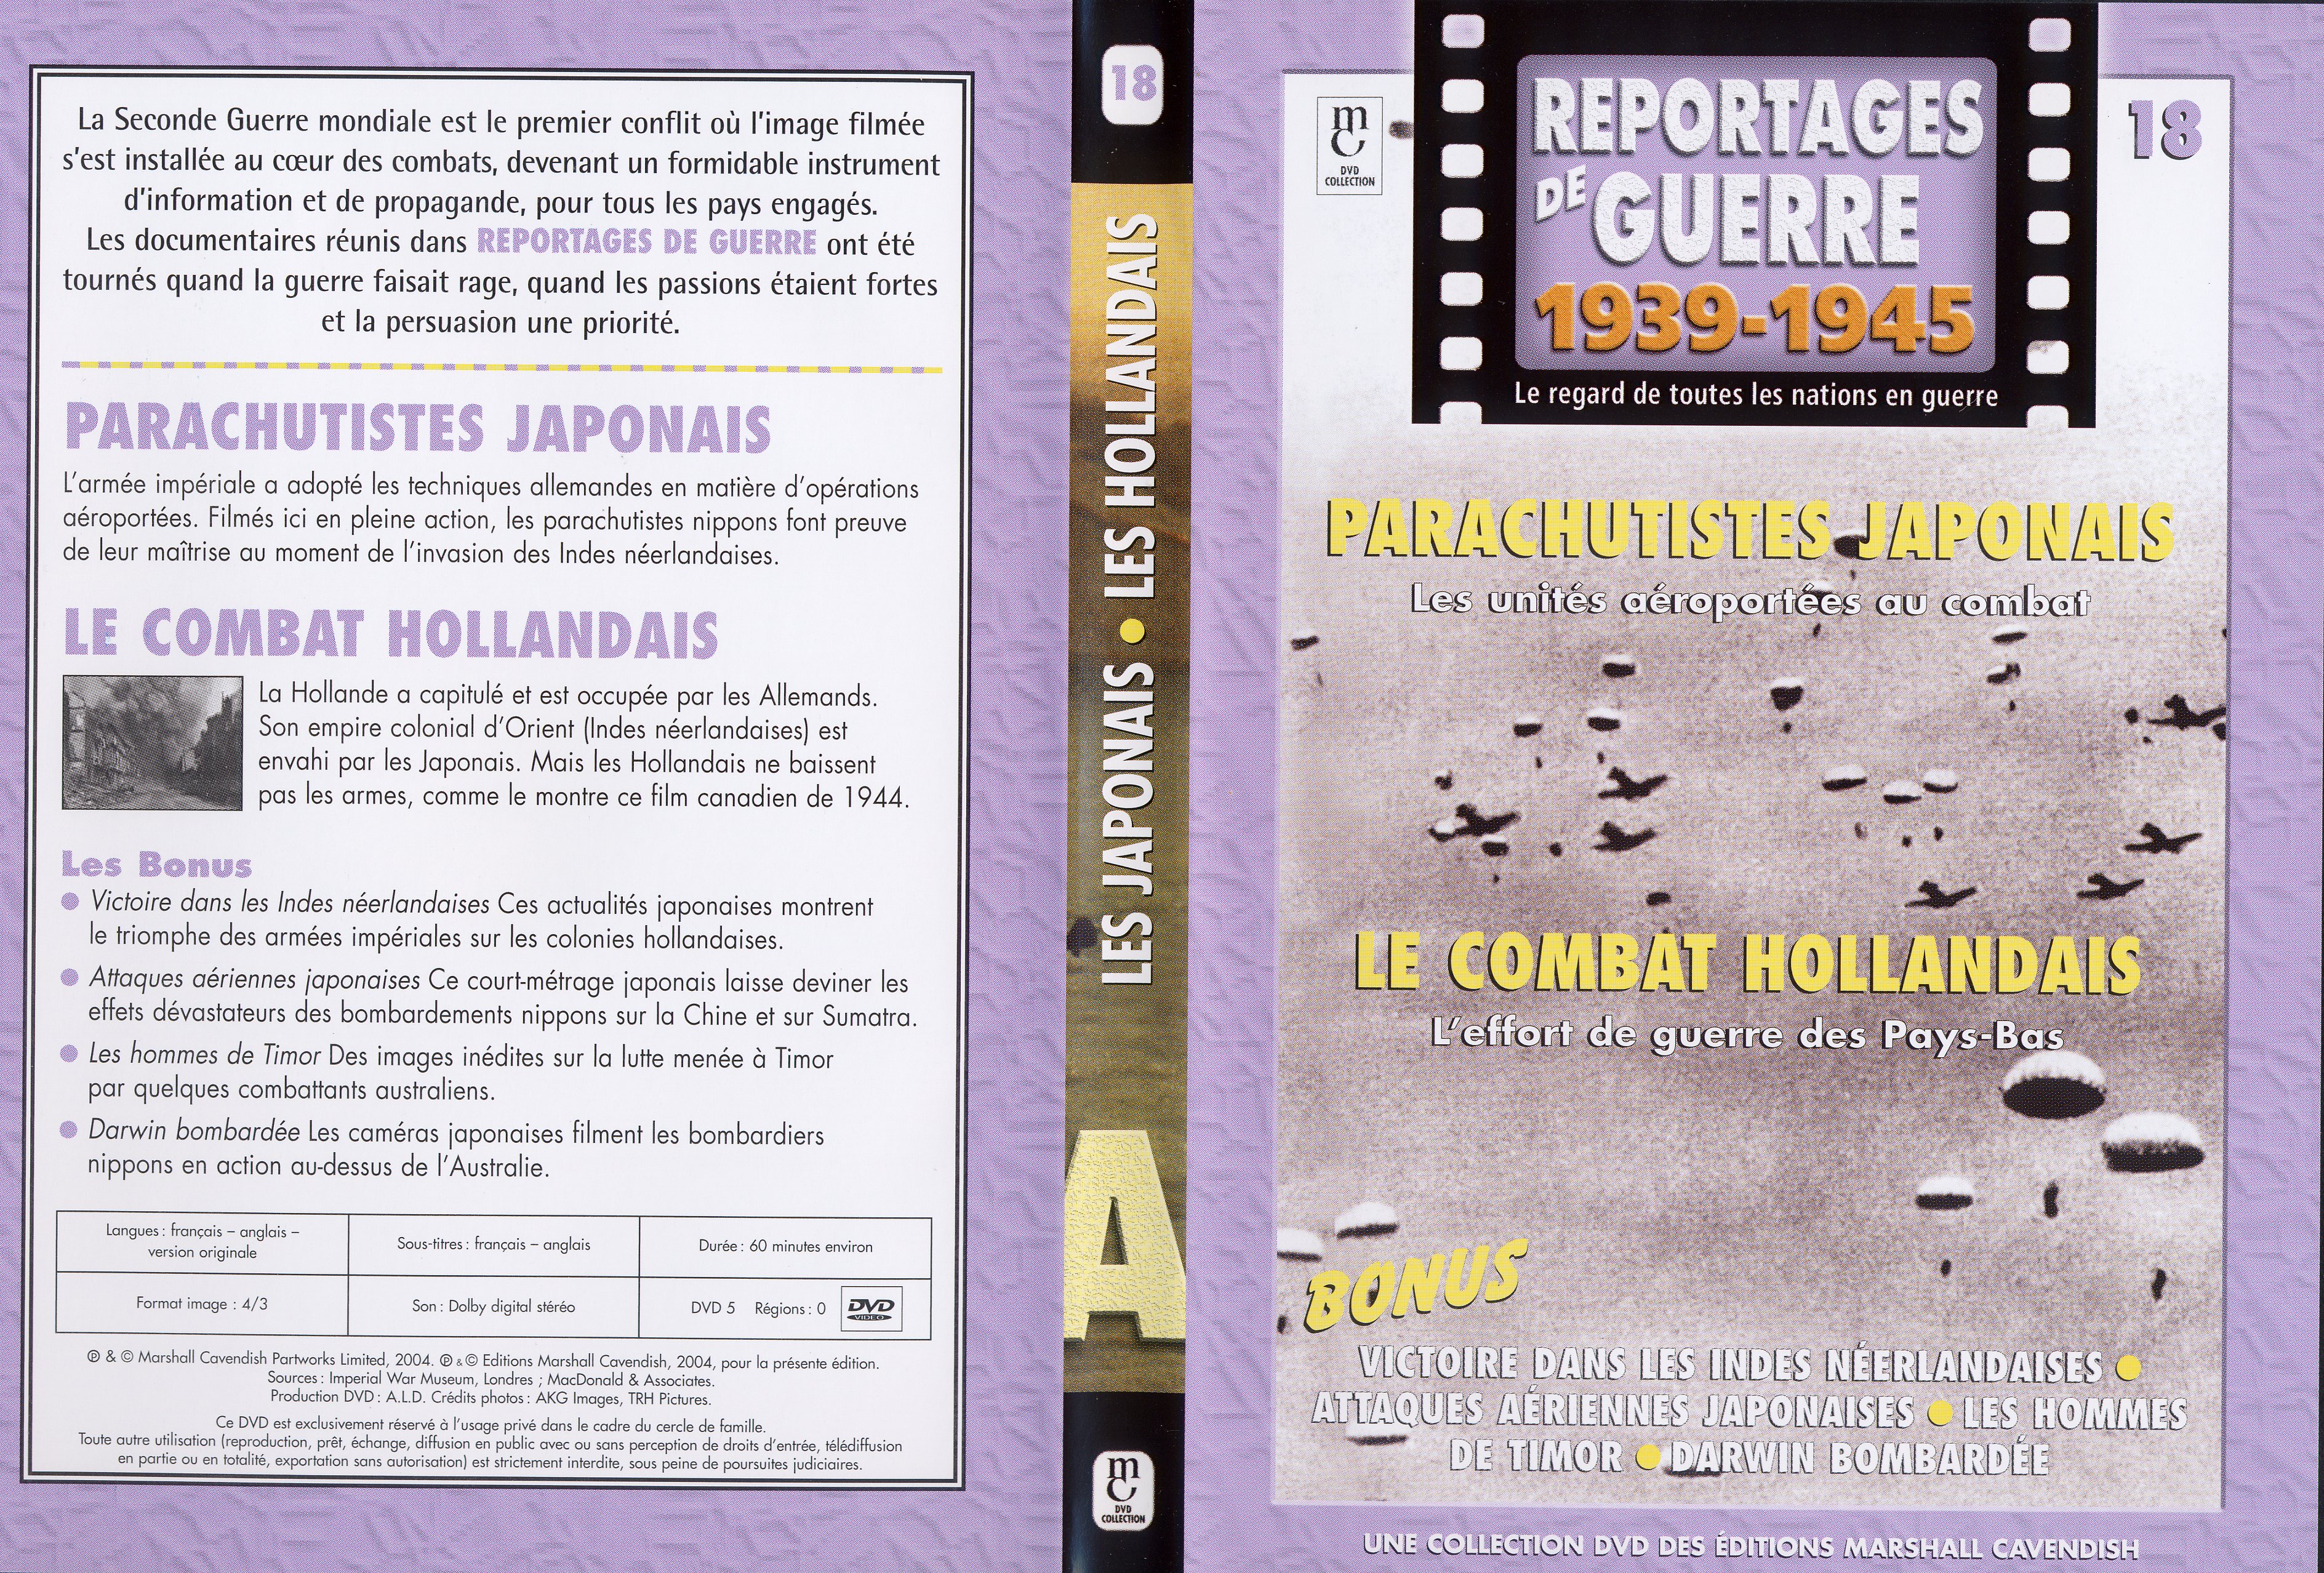 Jaquette DVD Reportages de guerre vol 18